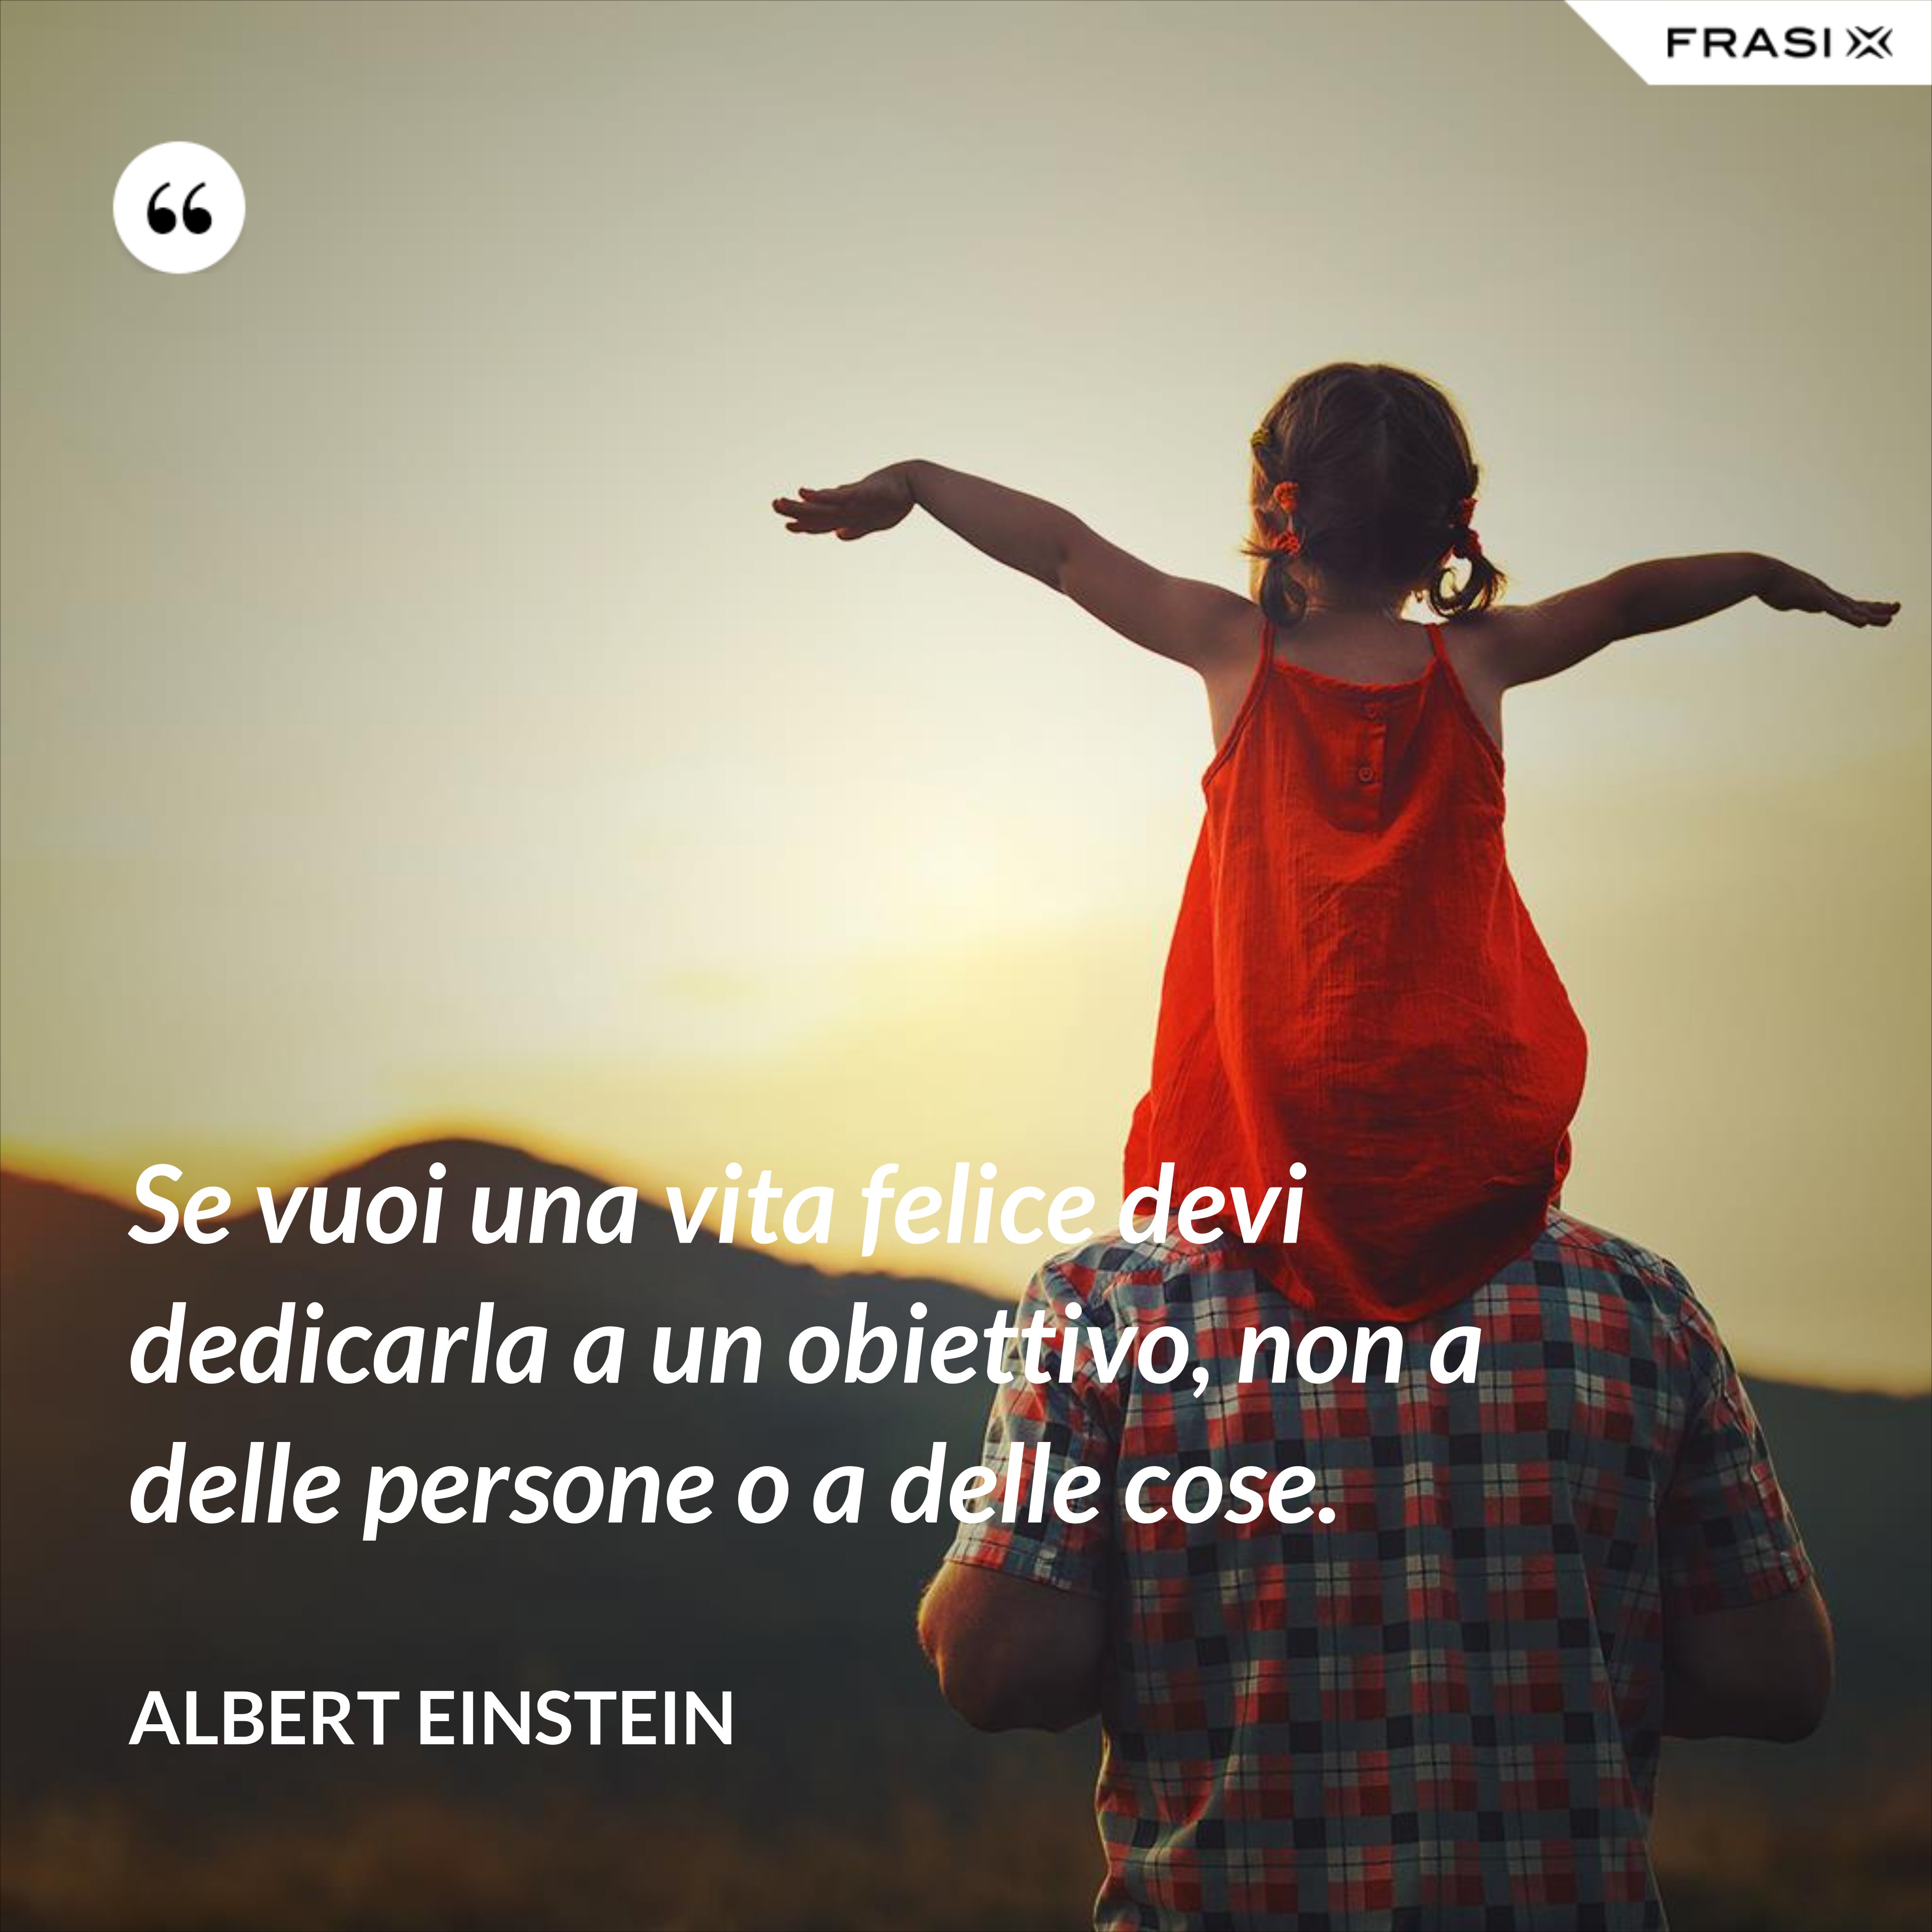 Se vuoi una vita felice devi dedicarla a un obiettivo, non a delle persone o a delle cose. - Albert Einstein